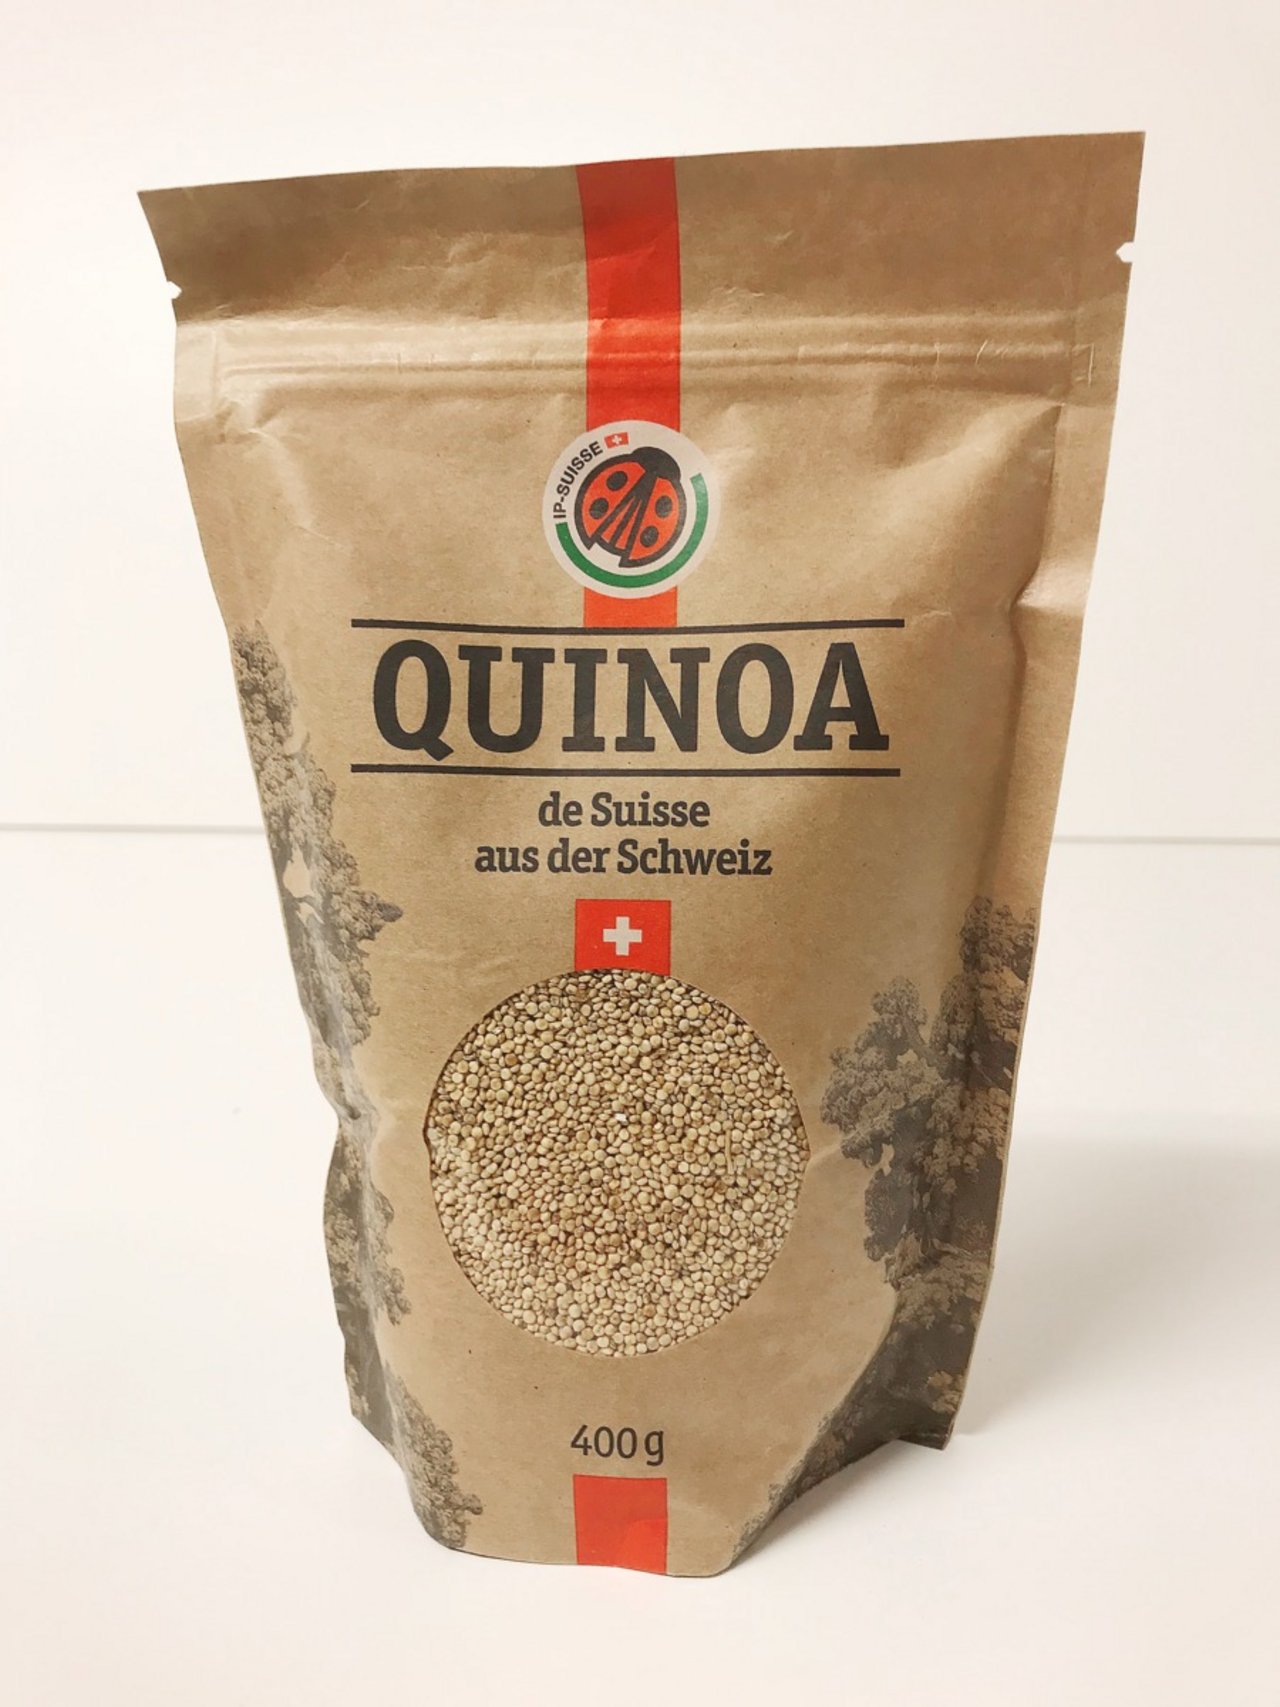 Quinoa aus dem Hause IP-Suisse. Noch scheint das Produkt aus Südamerika beim Konsumenten besser anzukommen.